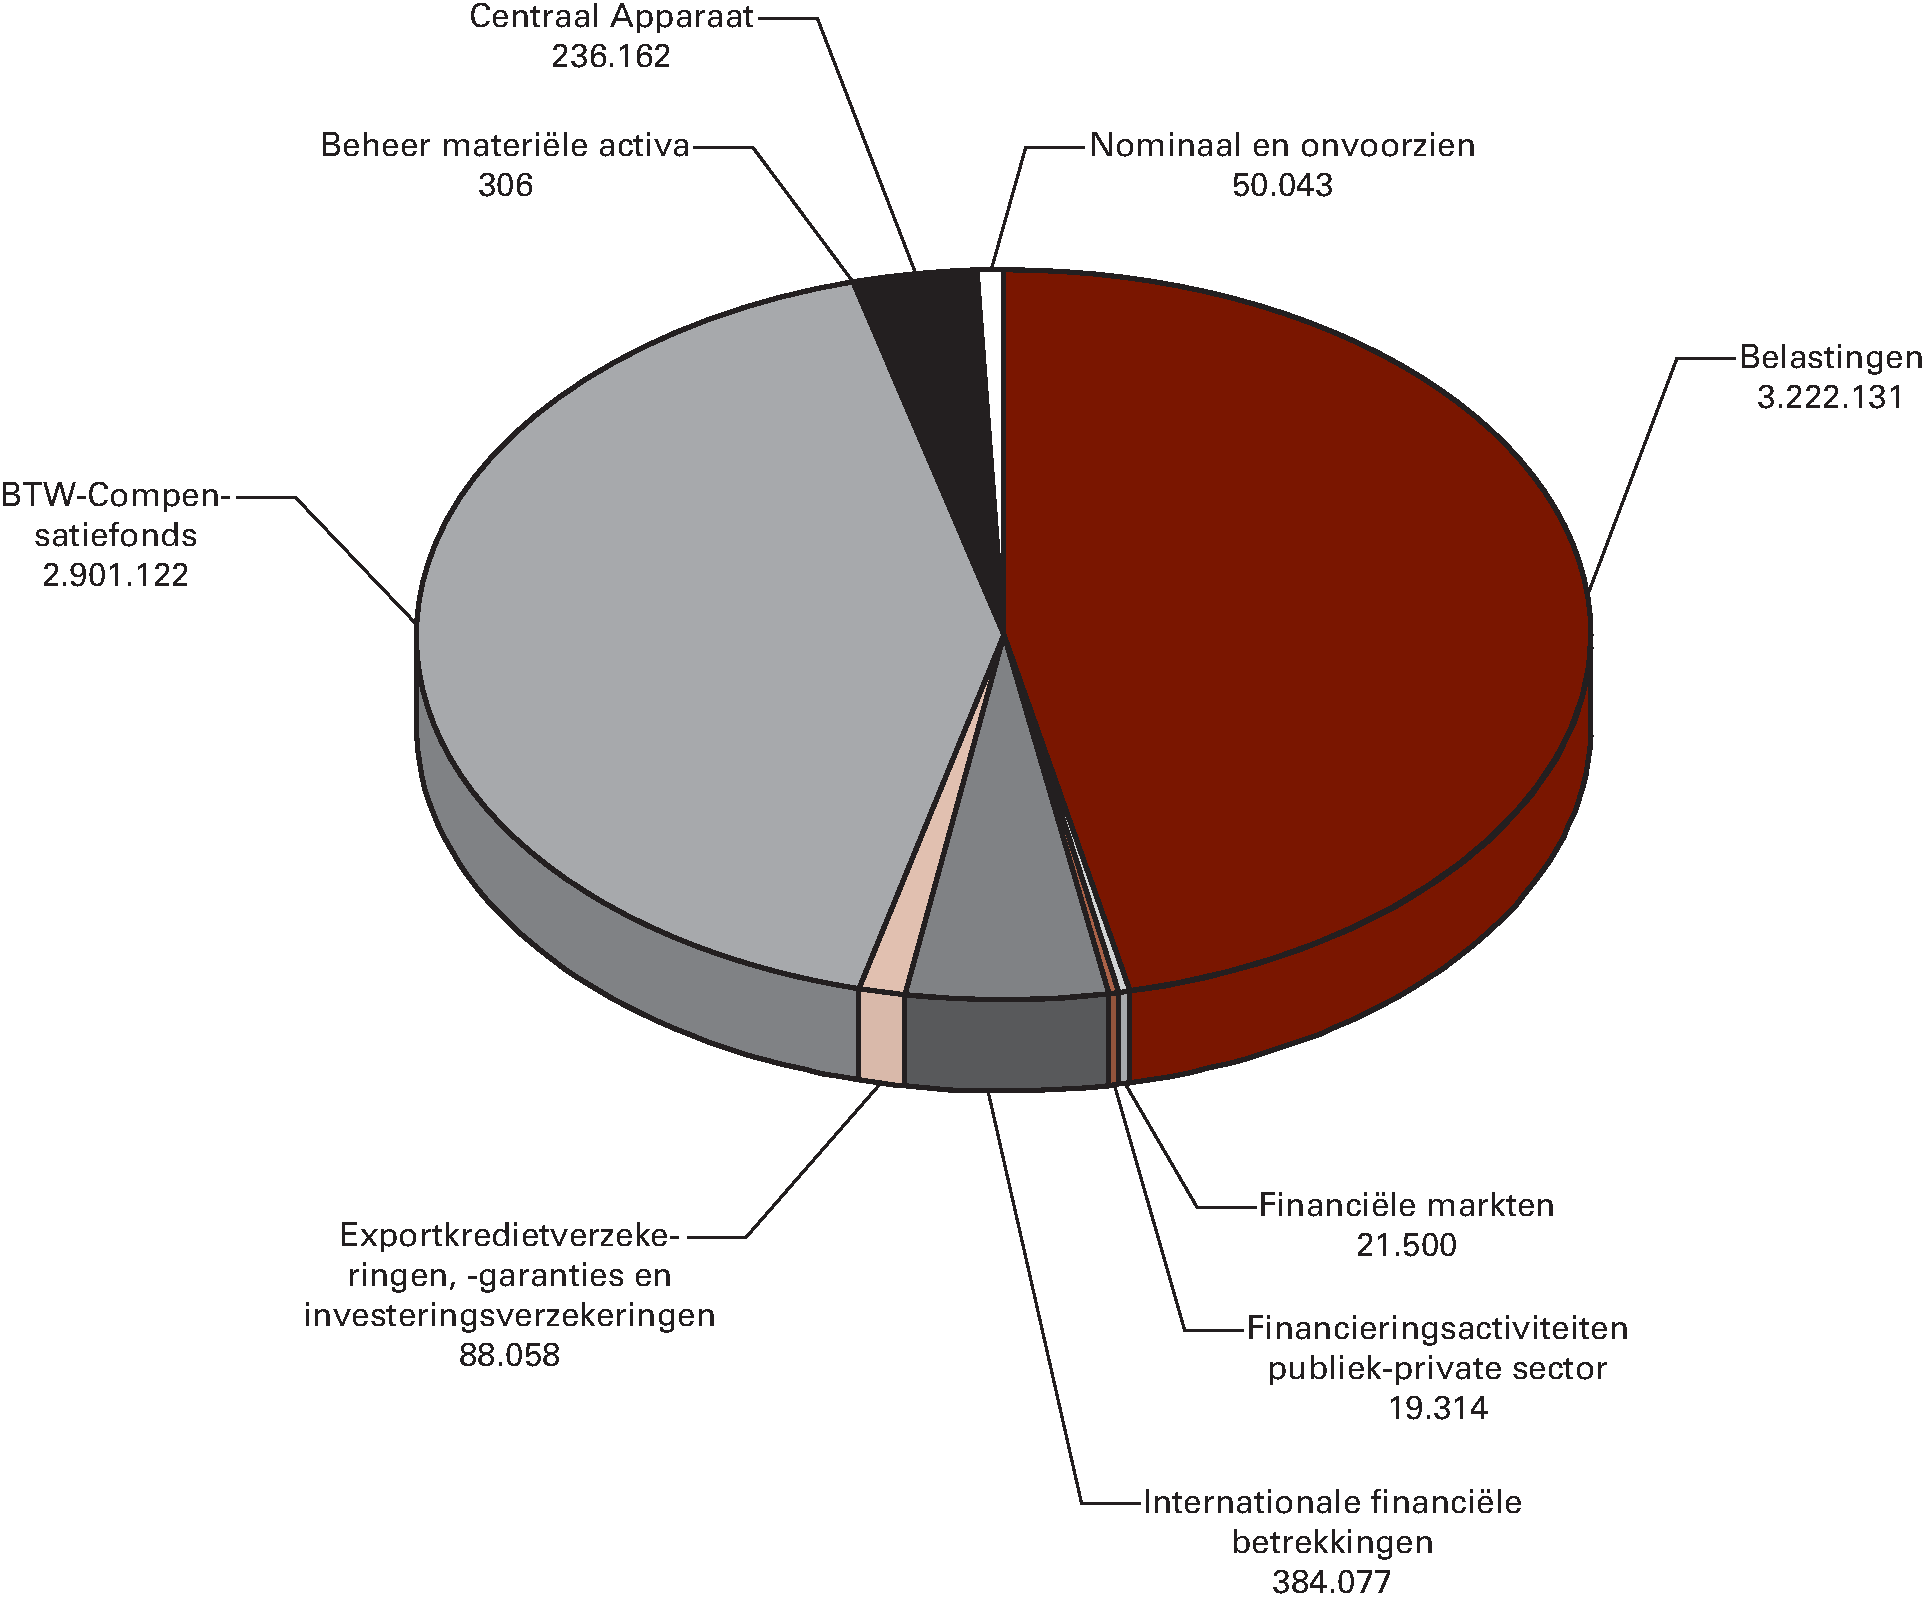 Begrote departementale uitgaven Ministerie van Financiën naar beleidsterrein voor 2015 (x € 1.000)